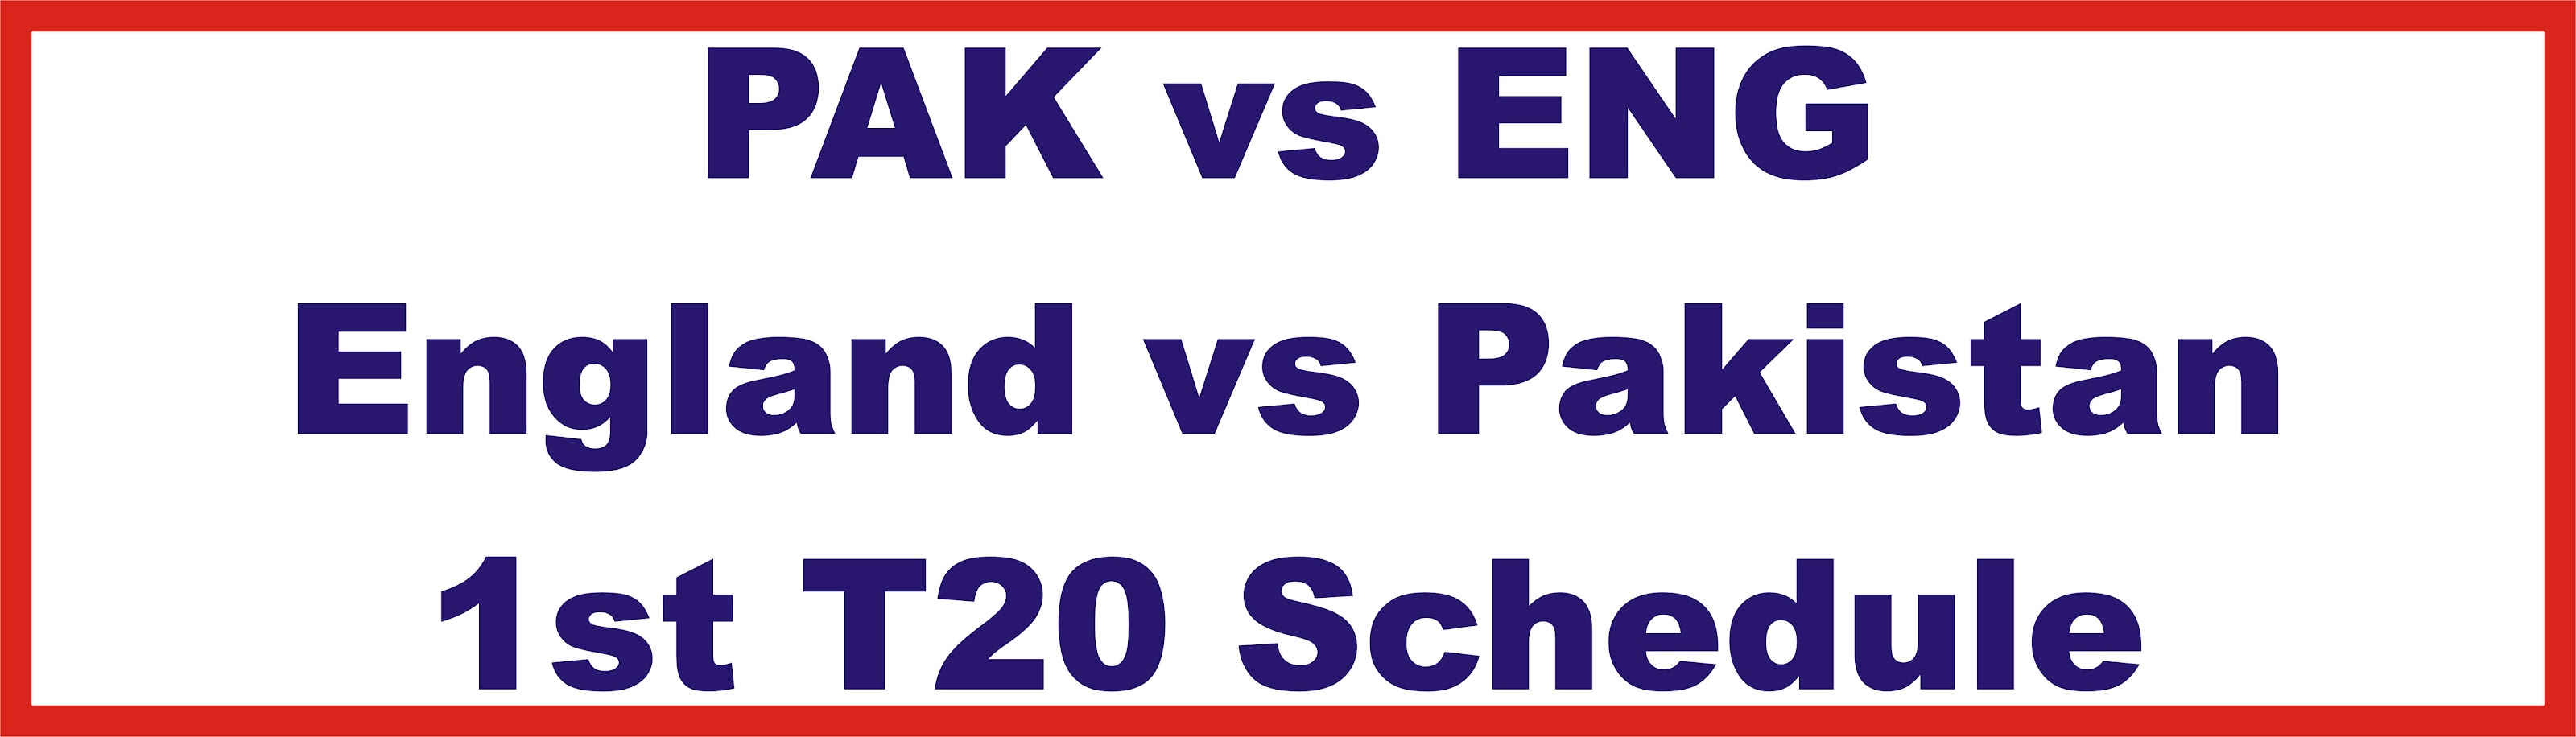 PAK vs ENG | England vs Pakistan 1st T20 Schedule